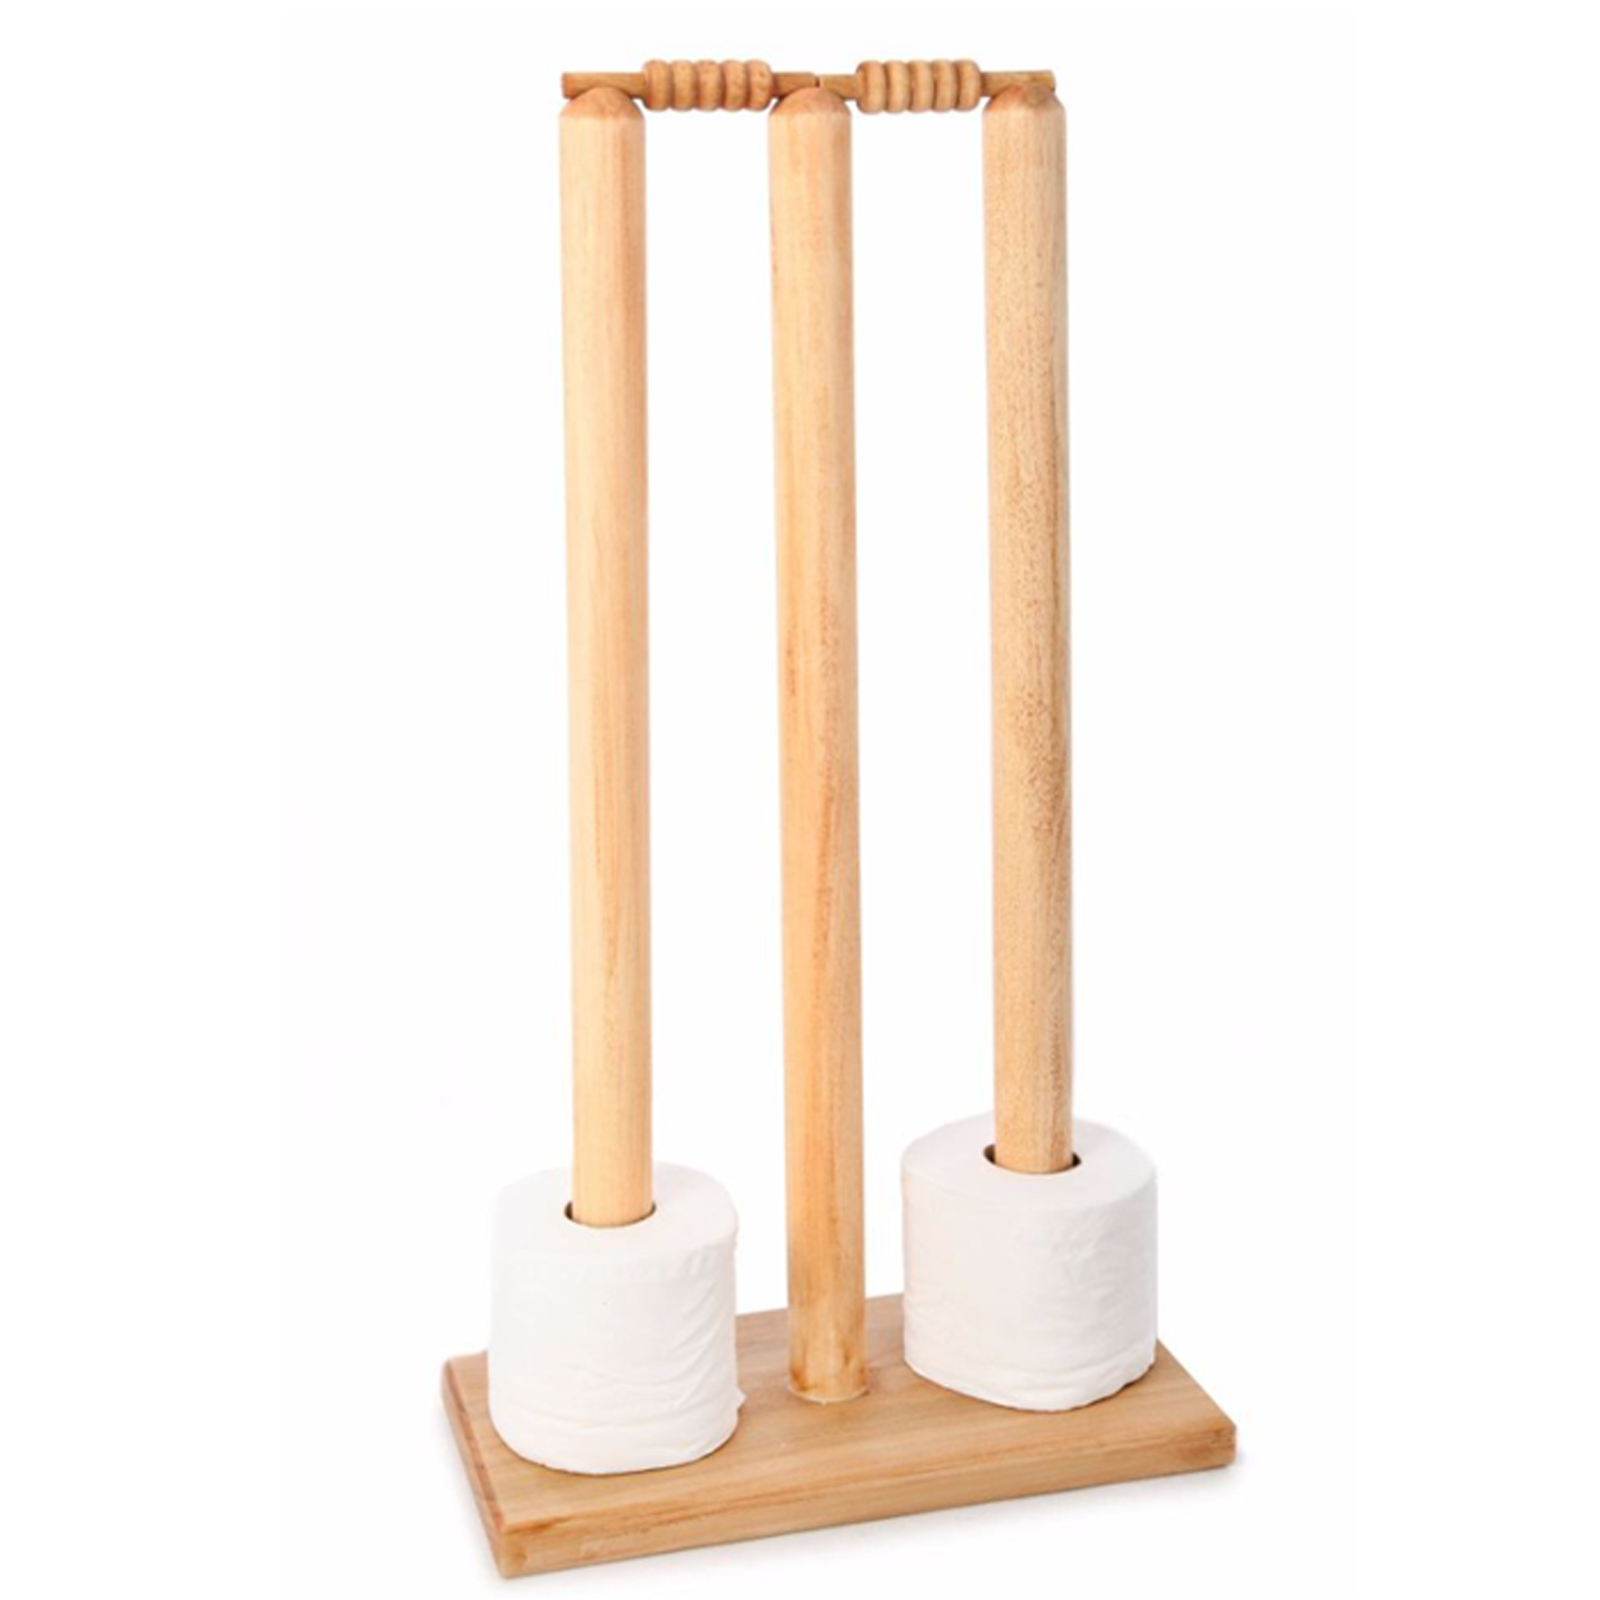 Cricket Stump Toilet Roll Holder